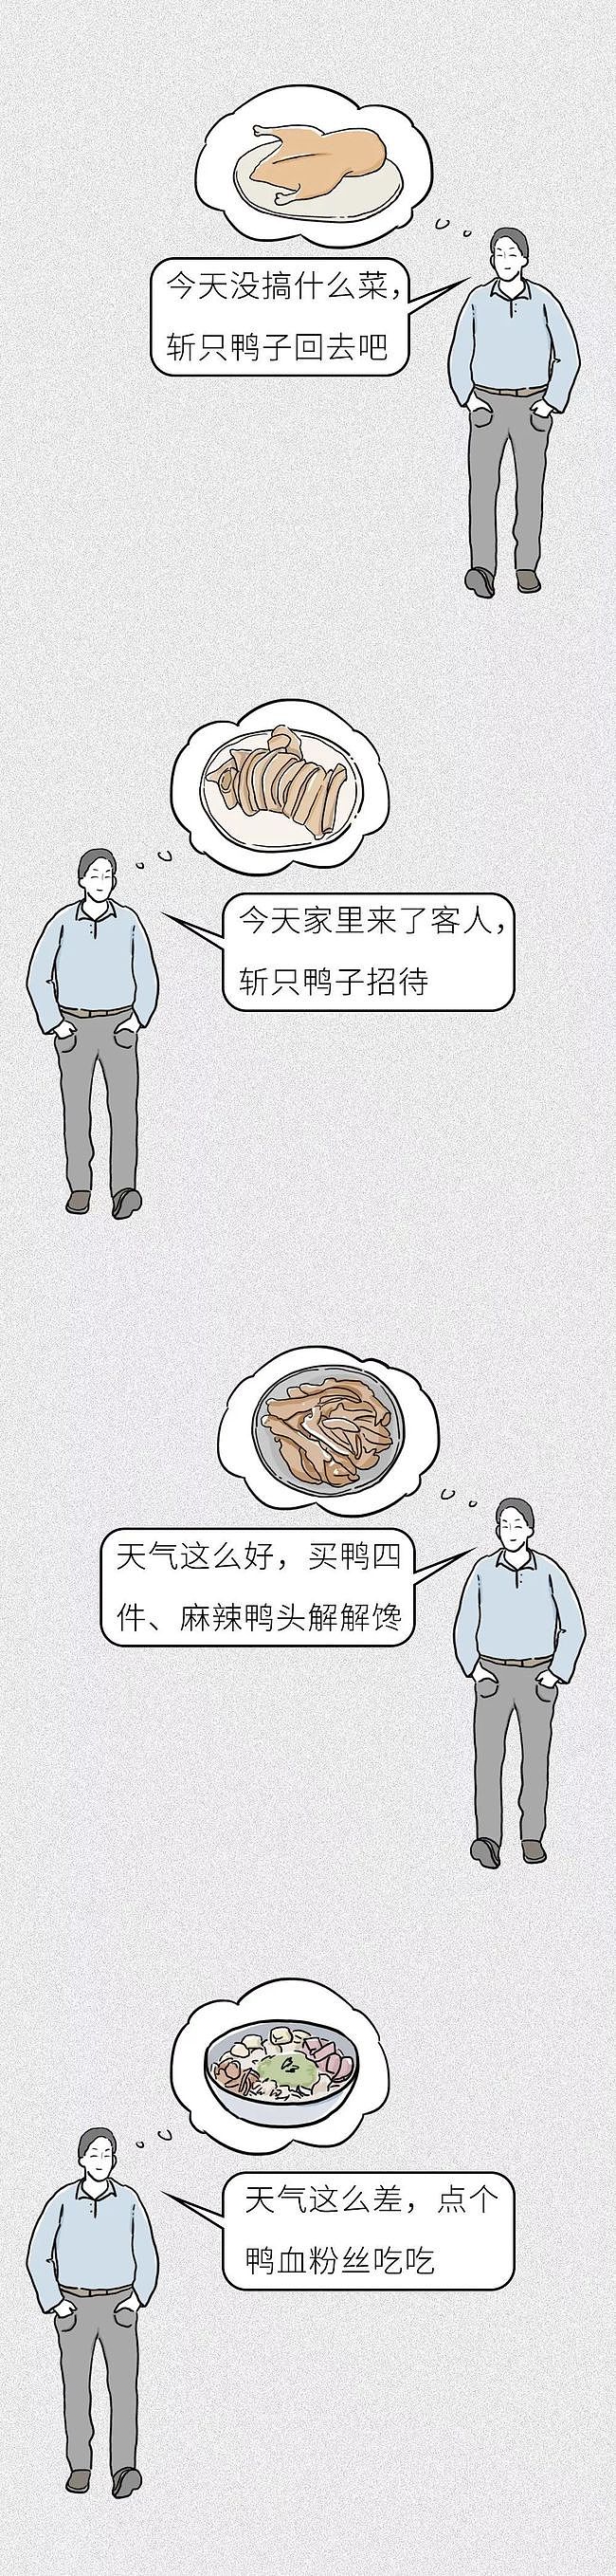 中国人减肥为什么那么难？看完我竟无言以对...... - 17